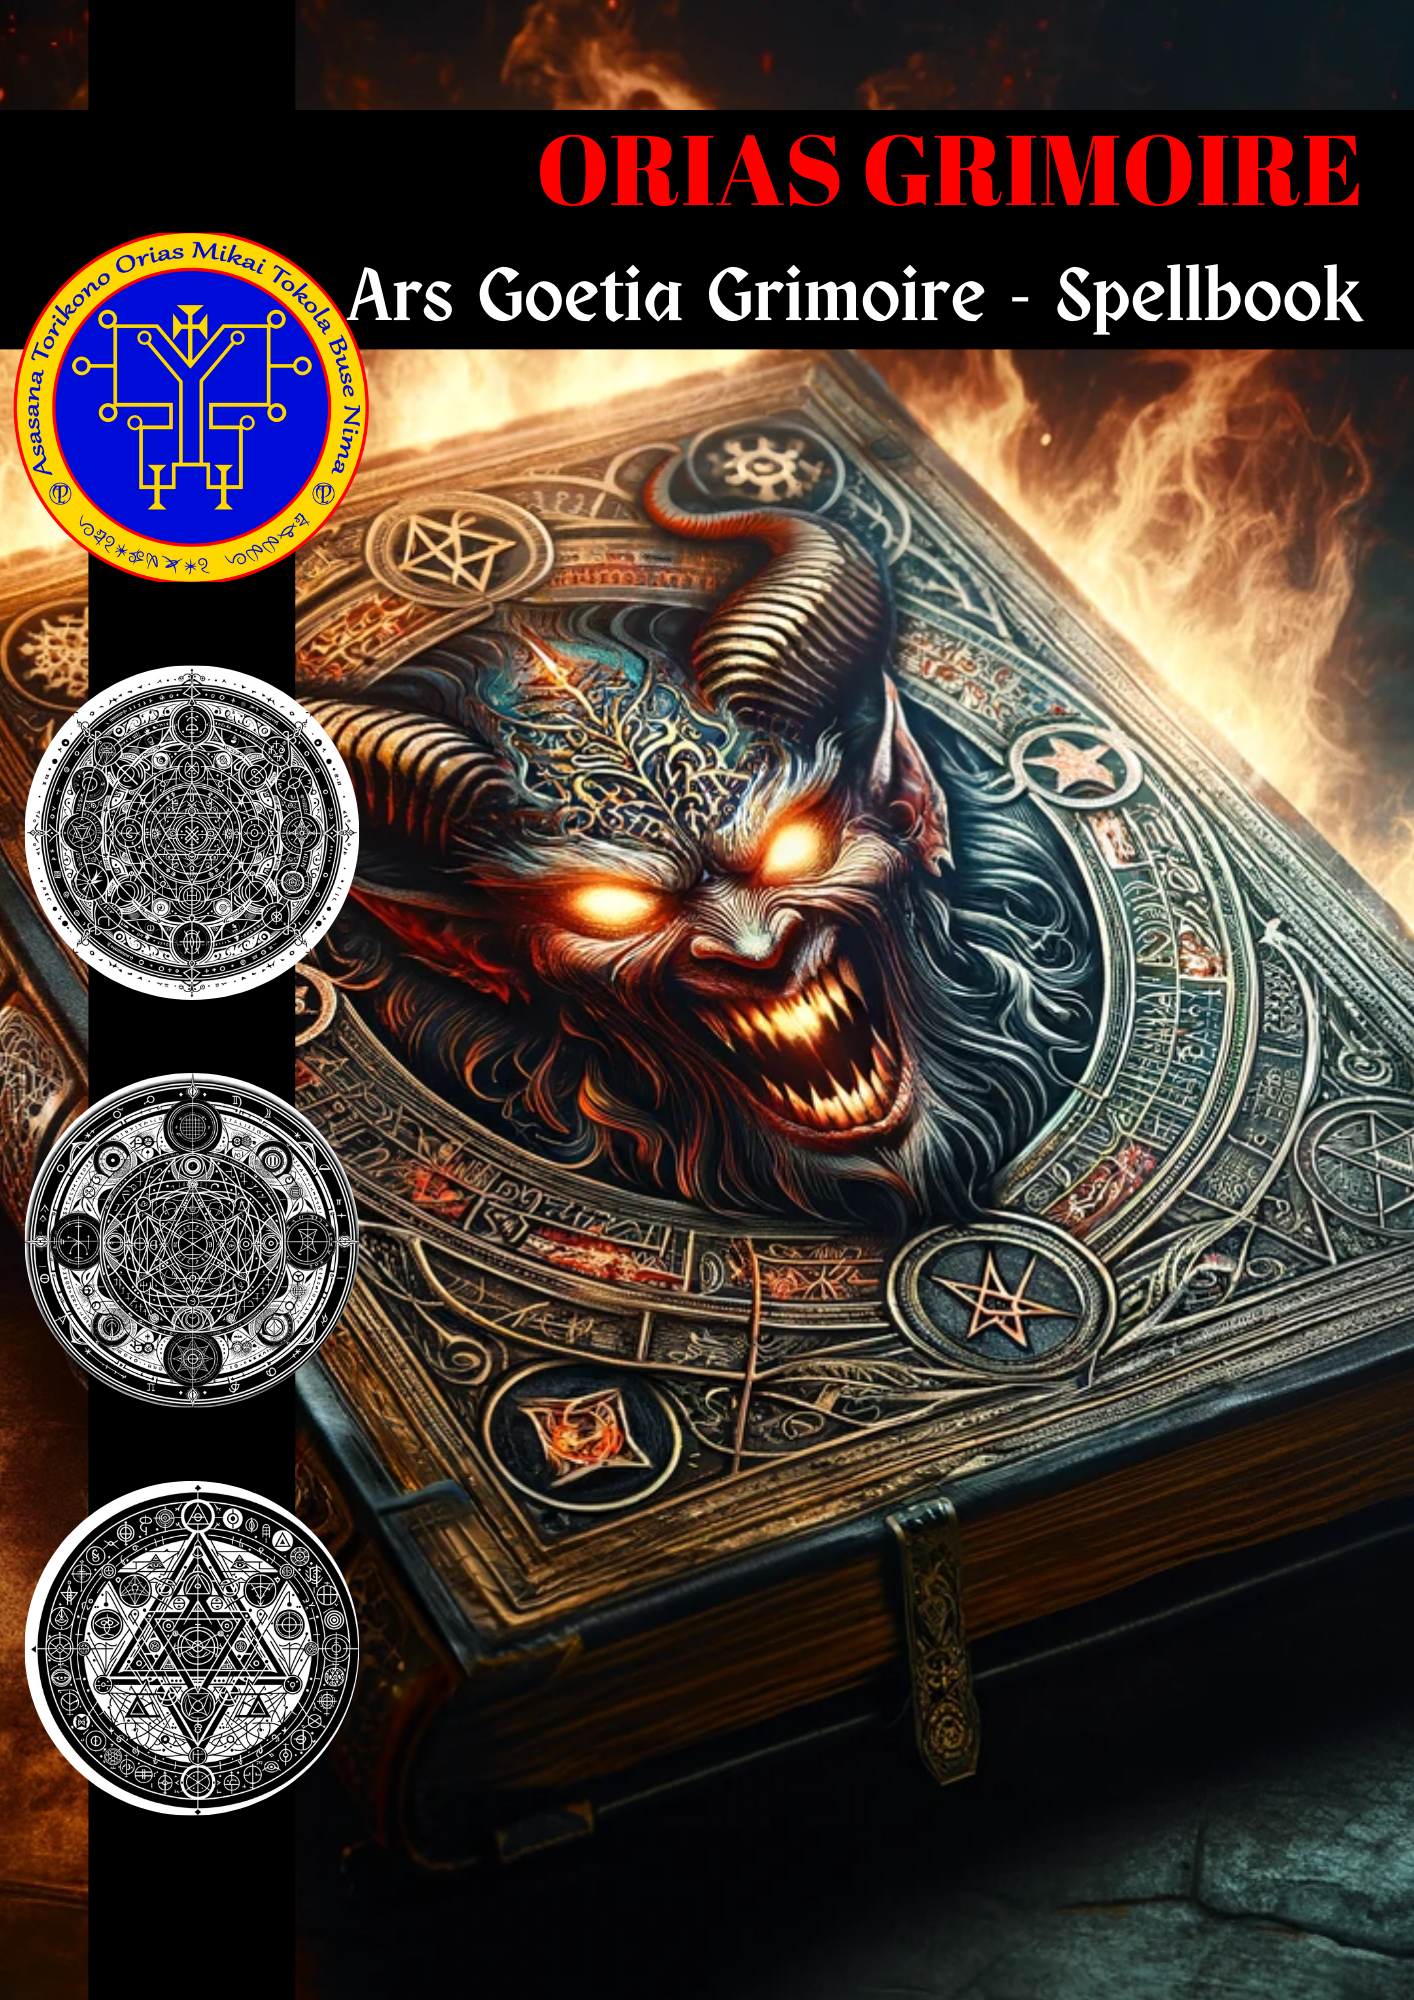 Grimoire of Orias Cantus & Rituales Grimoire pro Physica Opportunitas - Abraxas Amuletes ® Magic Talismans Initiationes